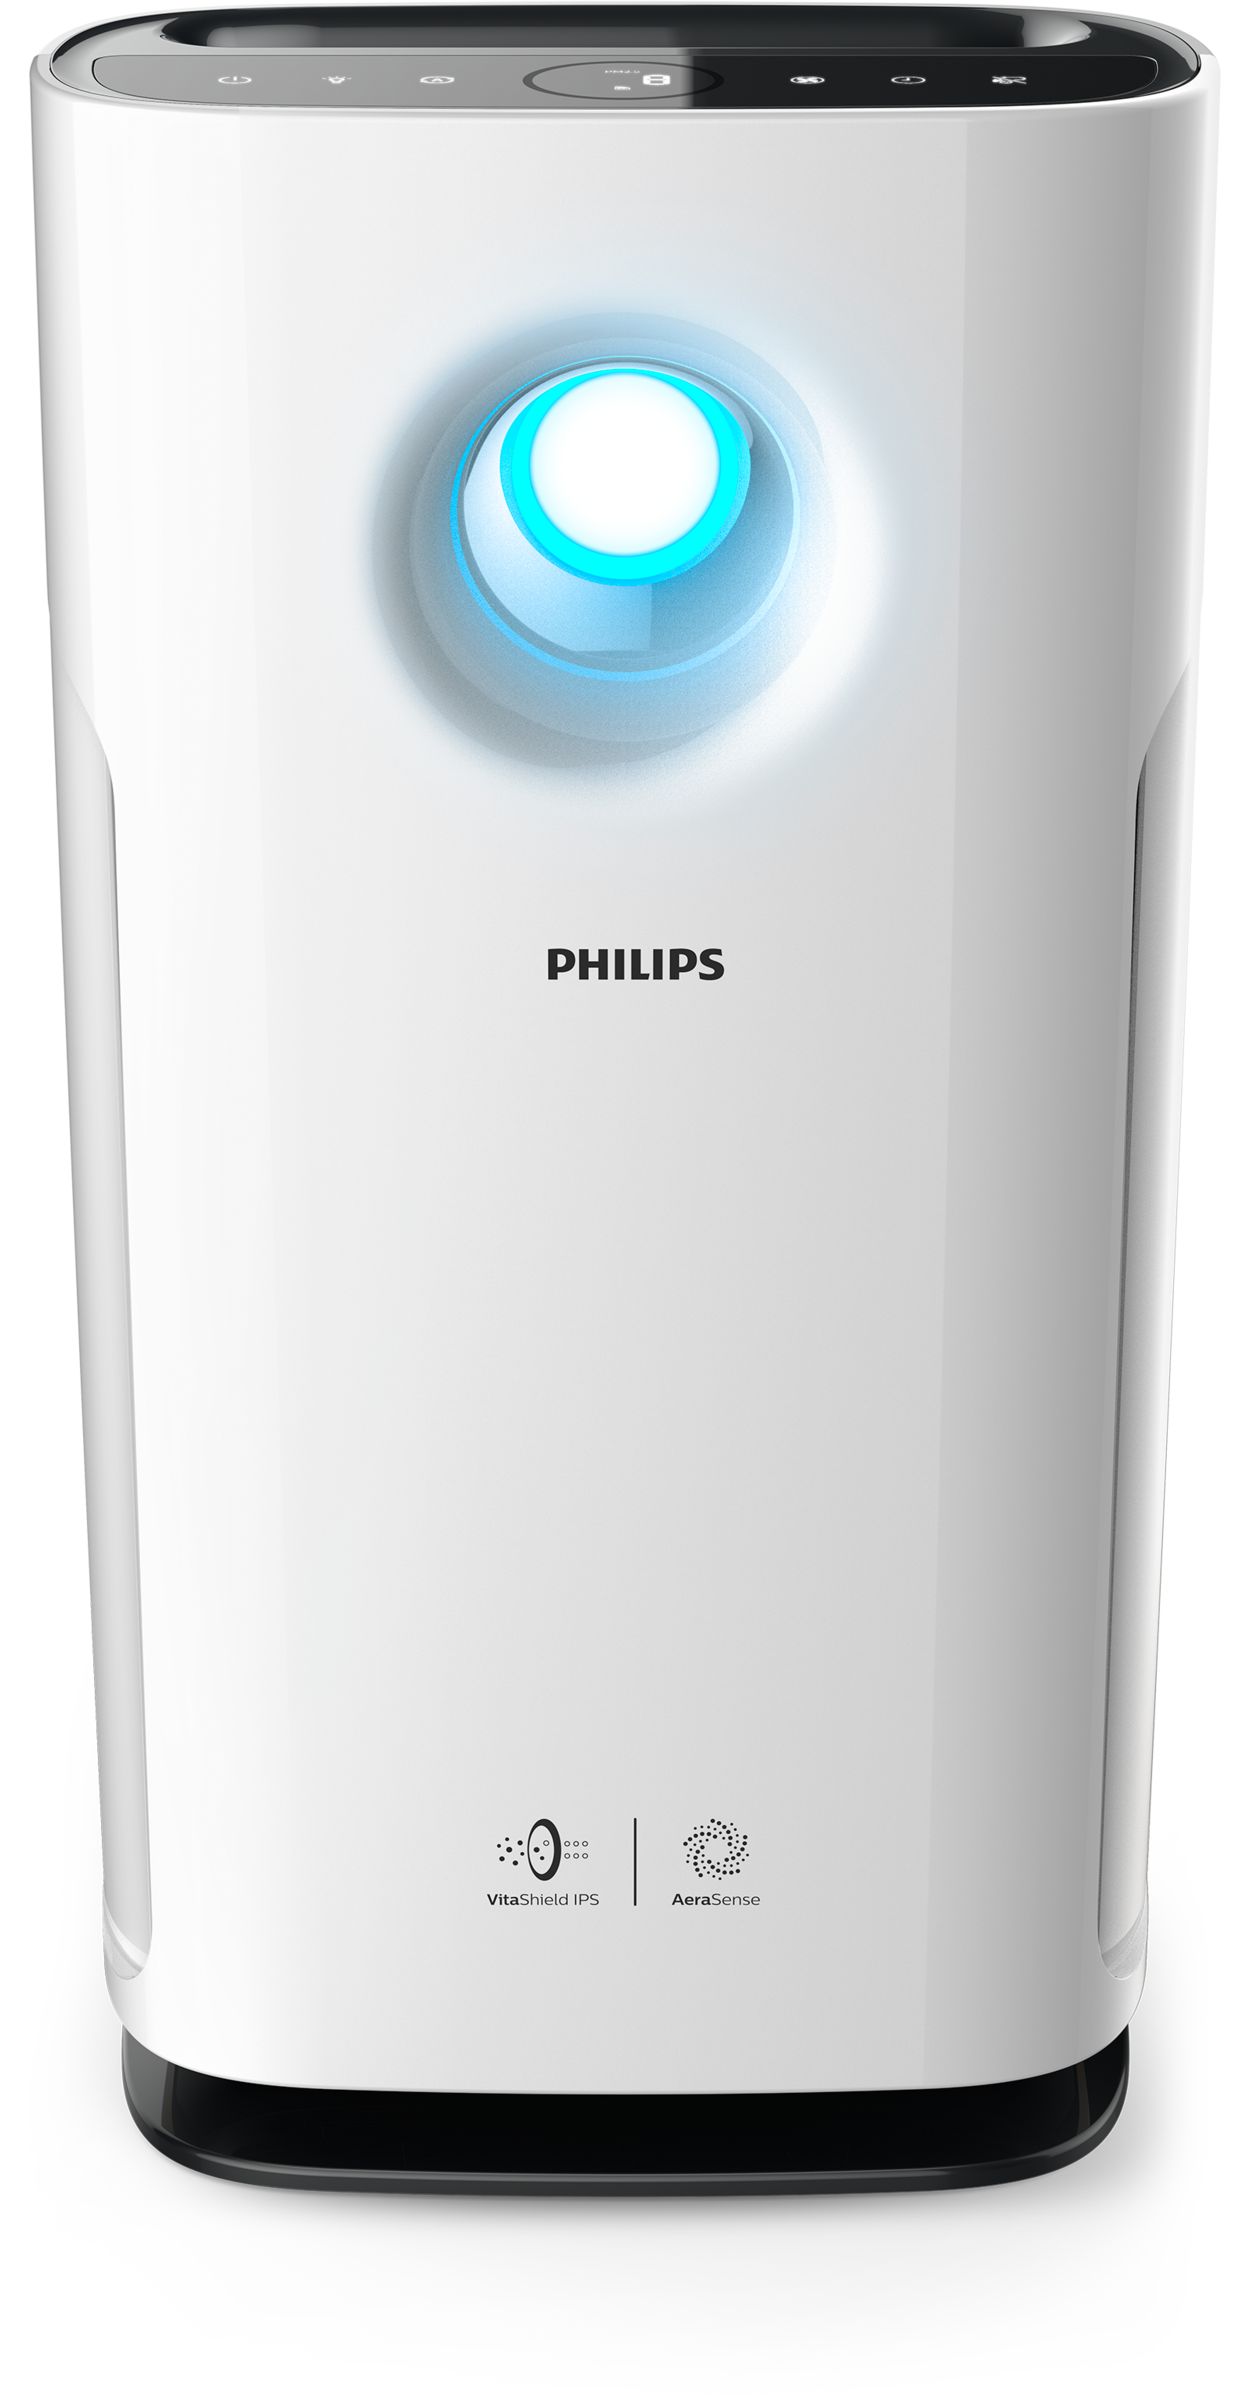 Philips vitashield ips